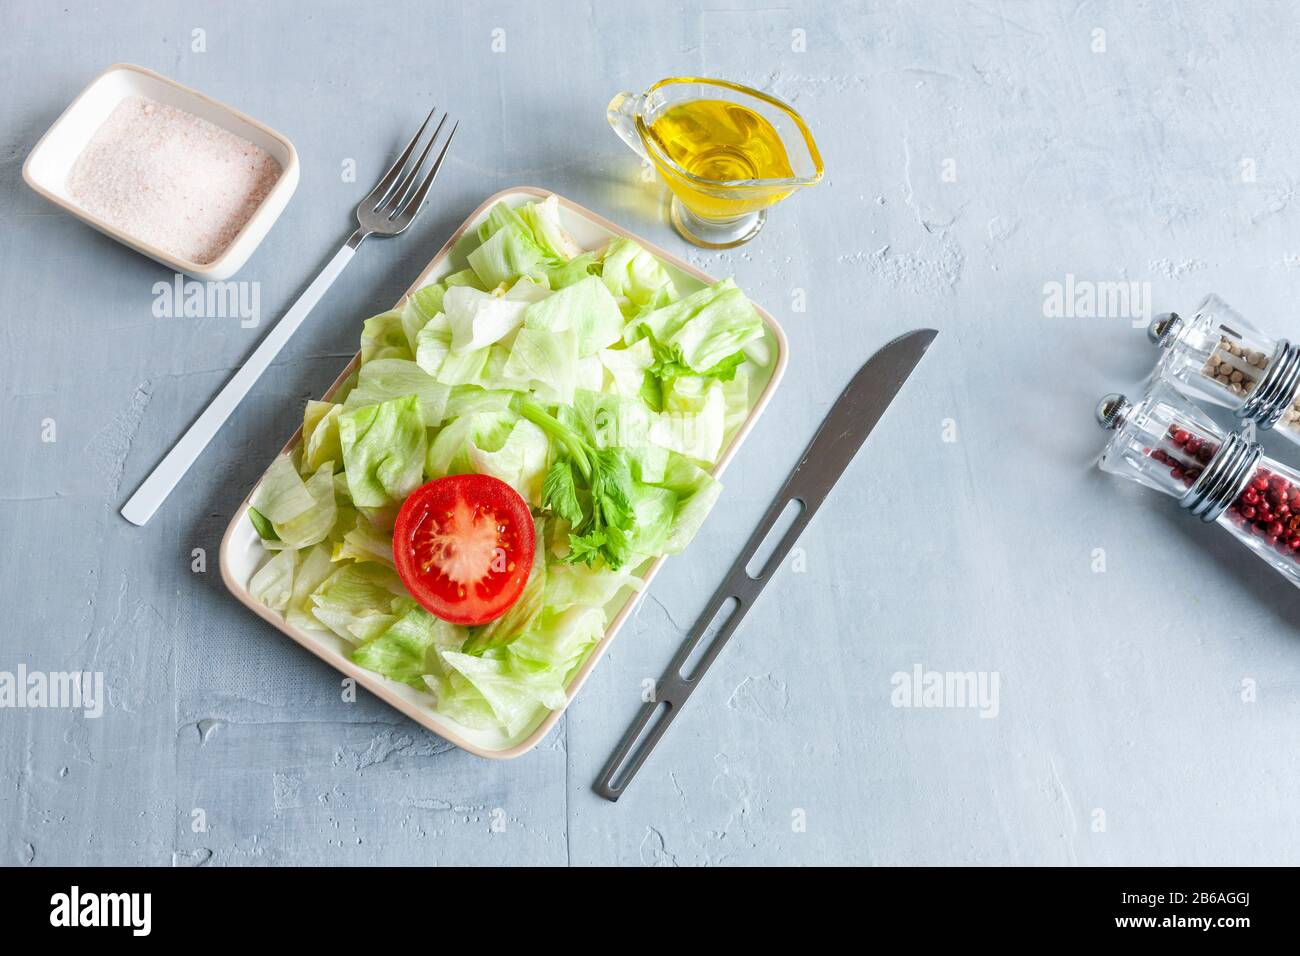 Assiette avec laitue iceberg verte, huile d'olive, tomatoe, concept intermittent de jeûne, régime alimentaire, perte de poids Banque D'Images